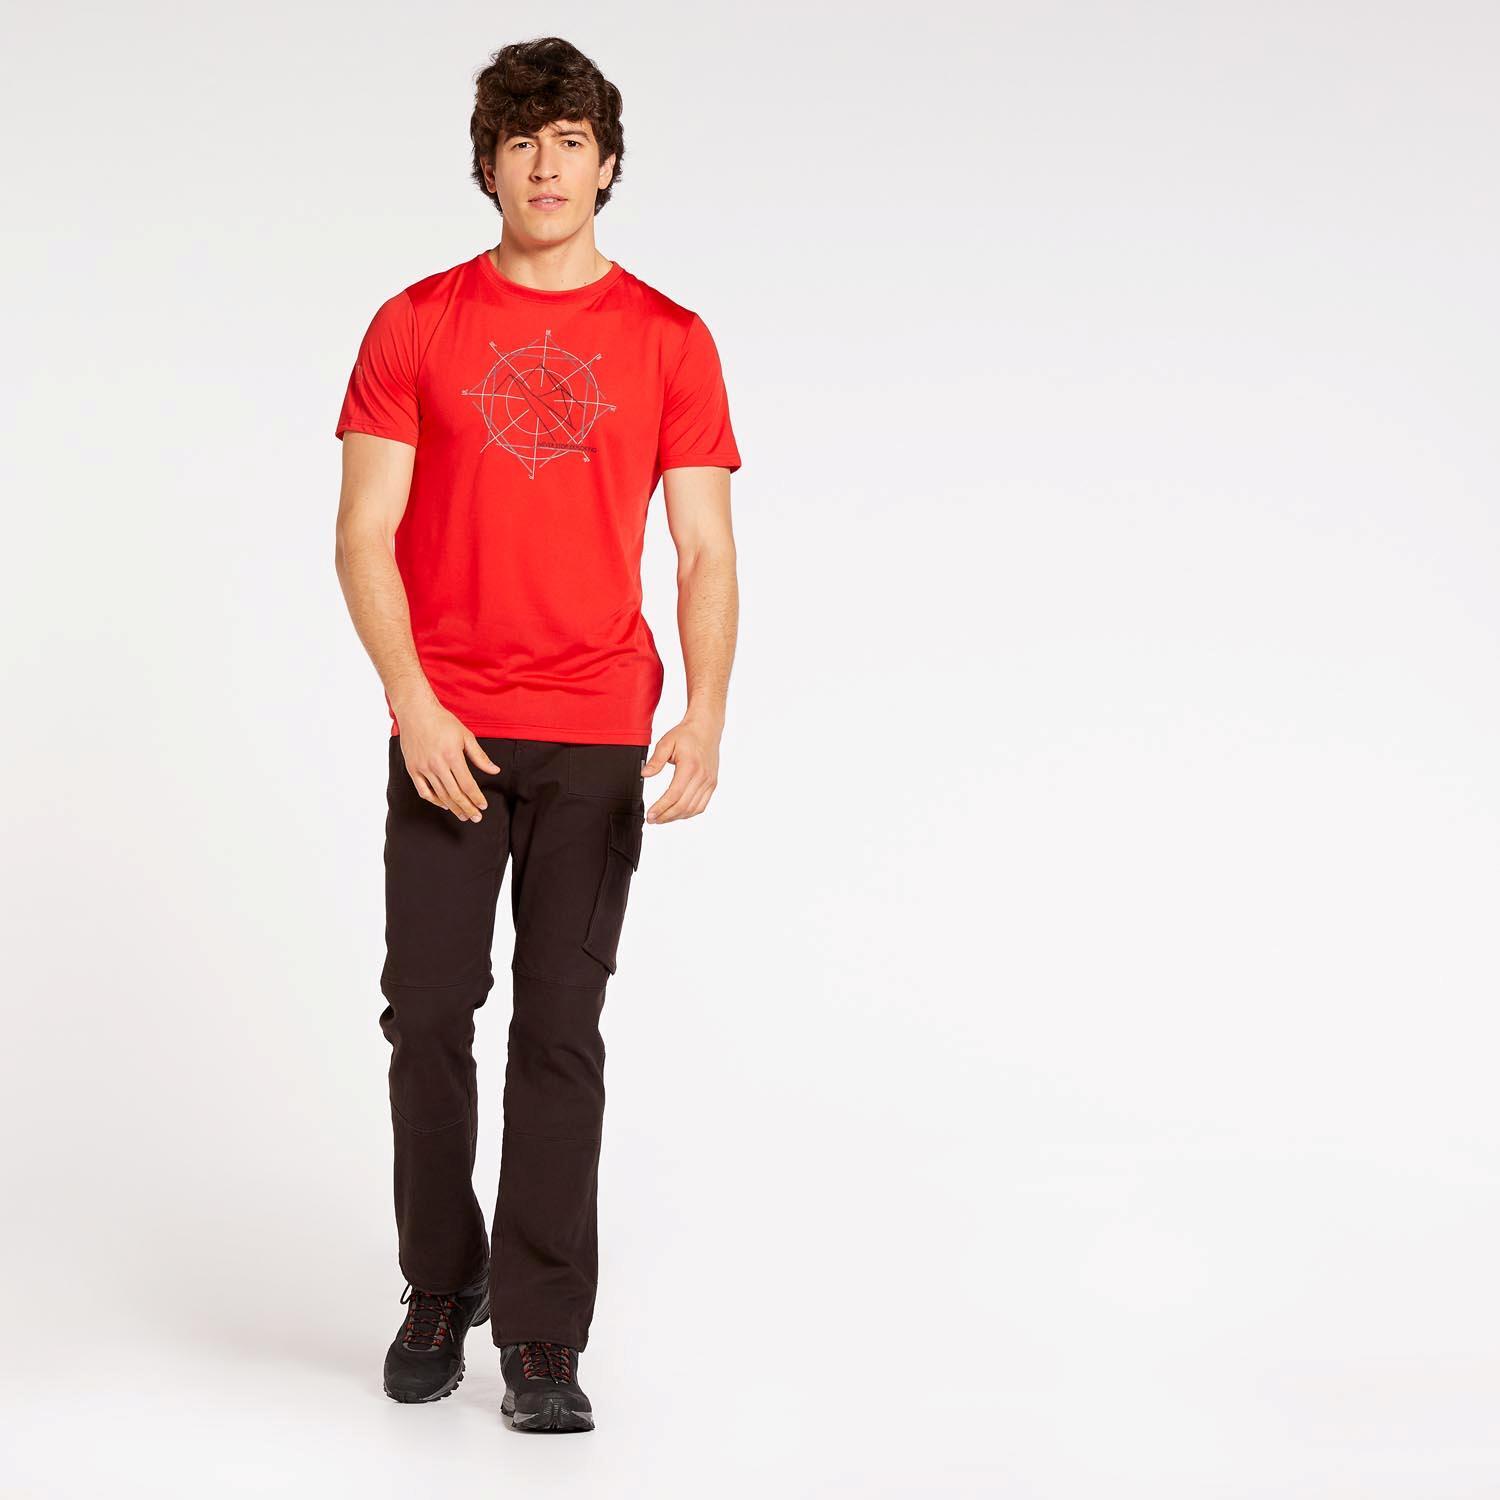 T-shirt Vermelho - T-shirt Homem tamanho M